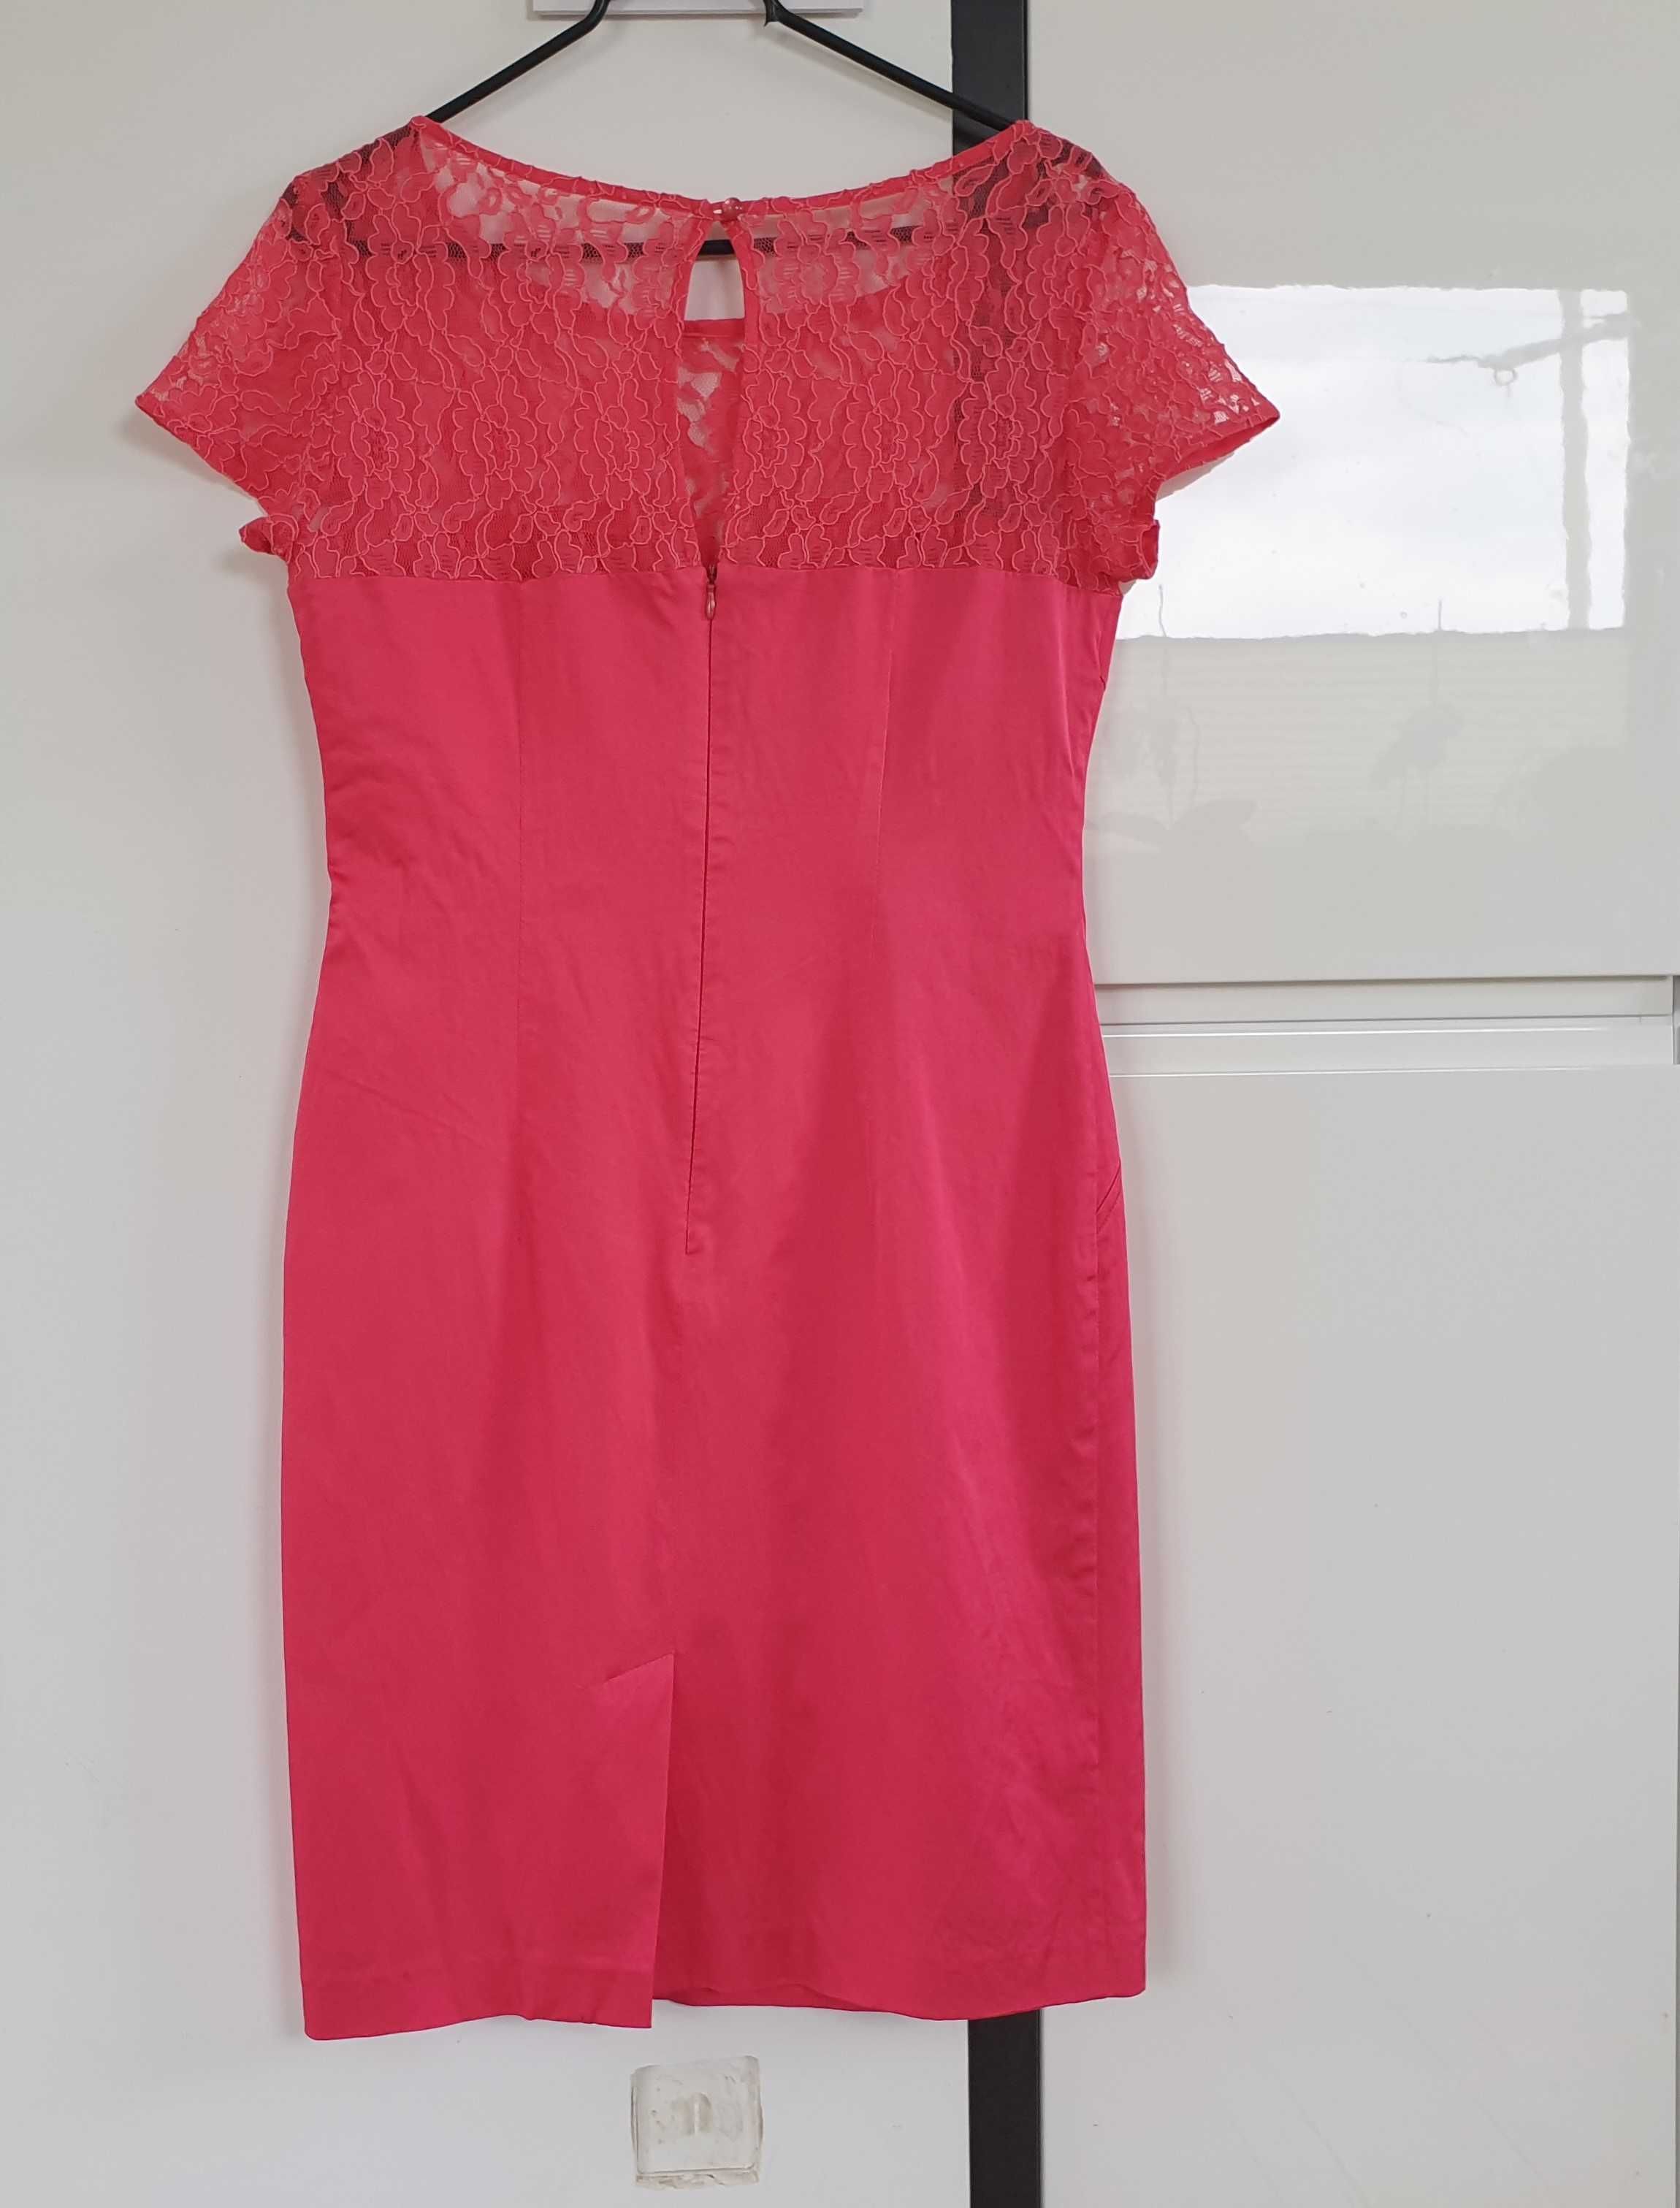 Przepiękna różowa sukienka z koronkową wstawką, rozmiar M-L